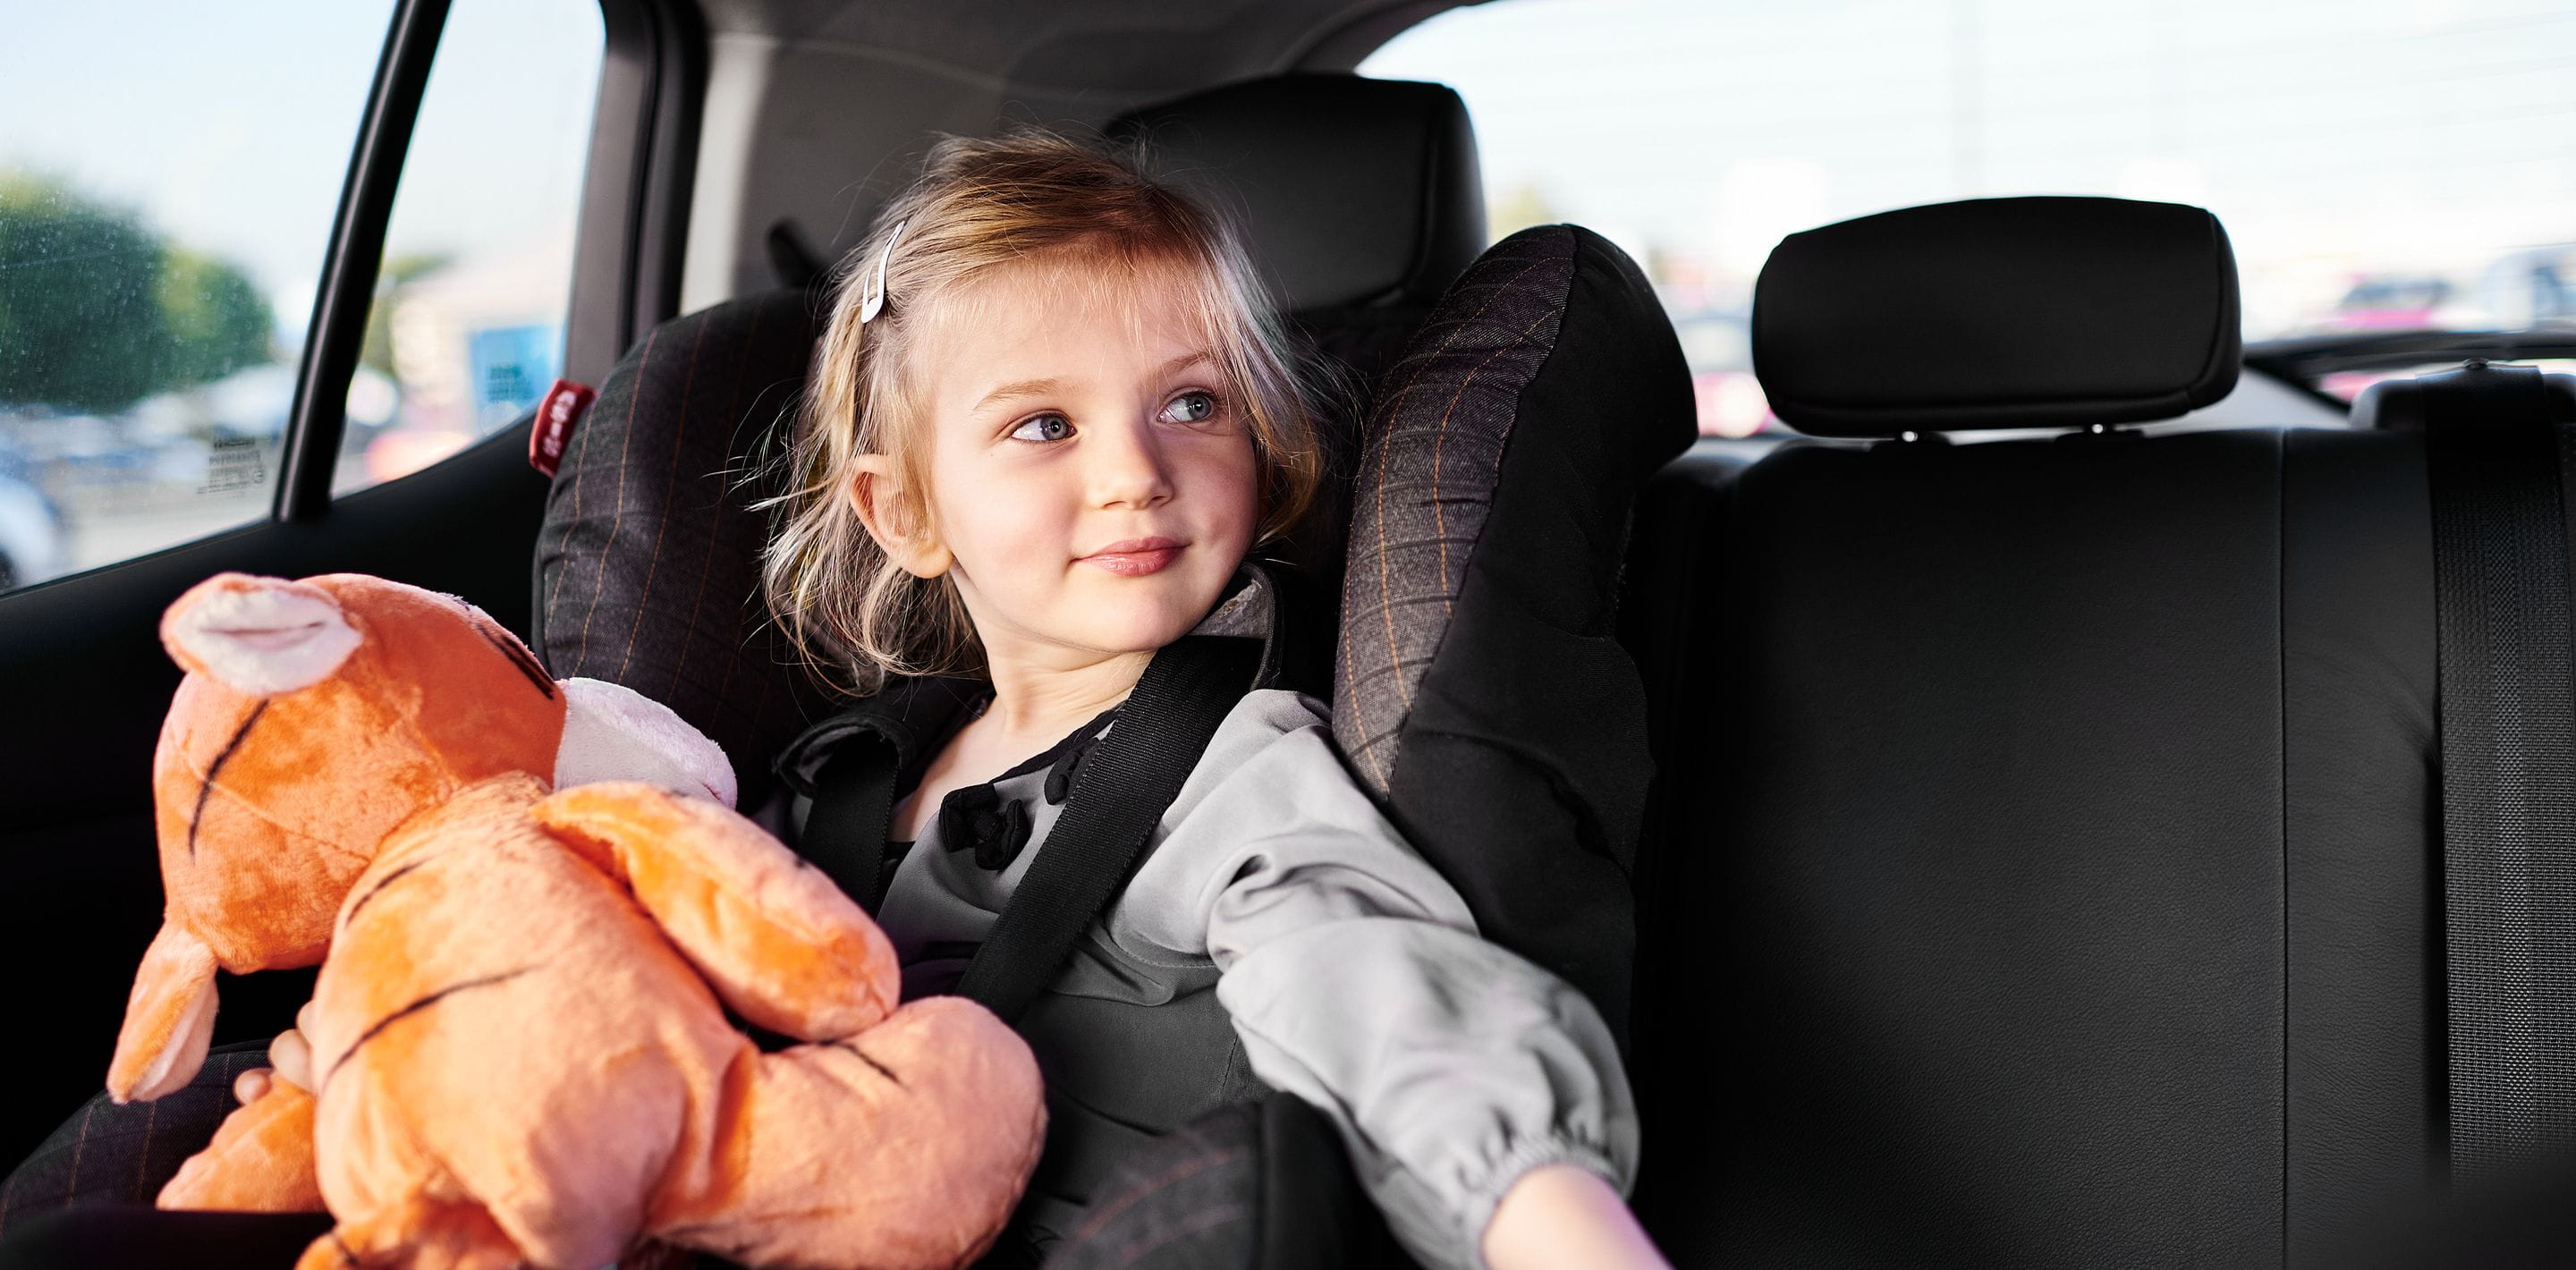 Sécurité en voiture pour les enfants de 0 à 10 ans à - de 200